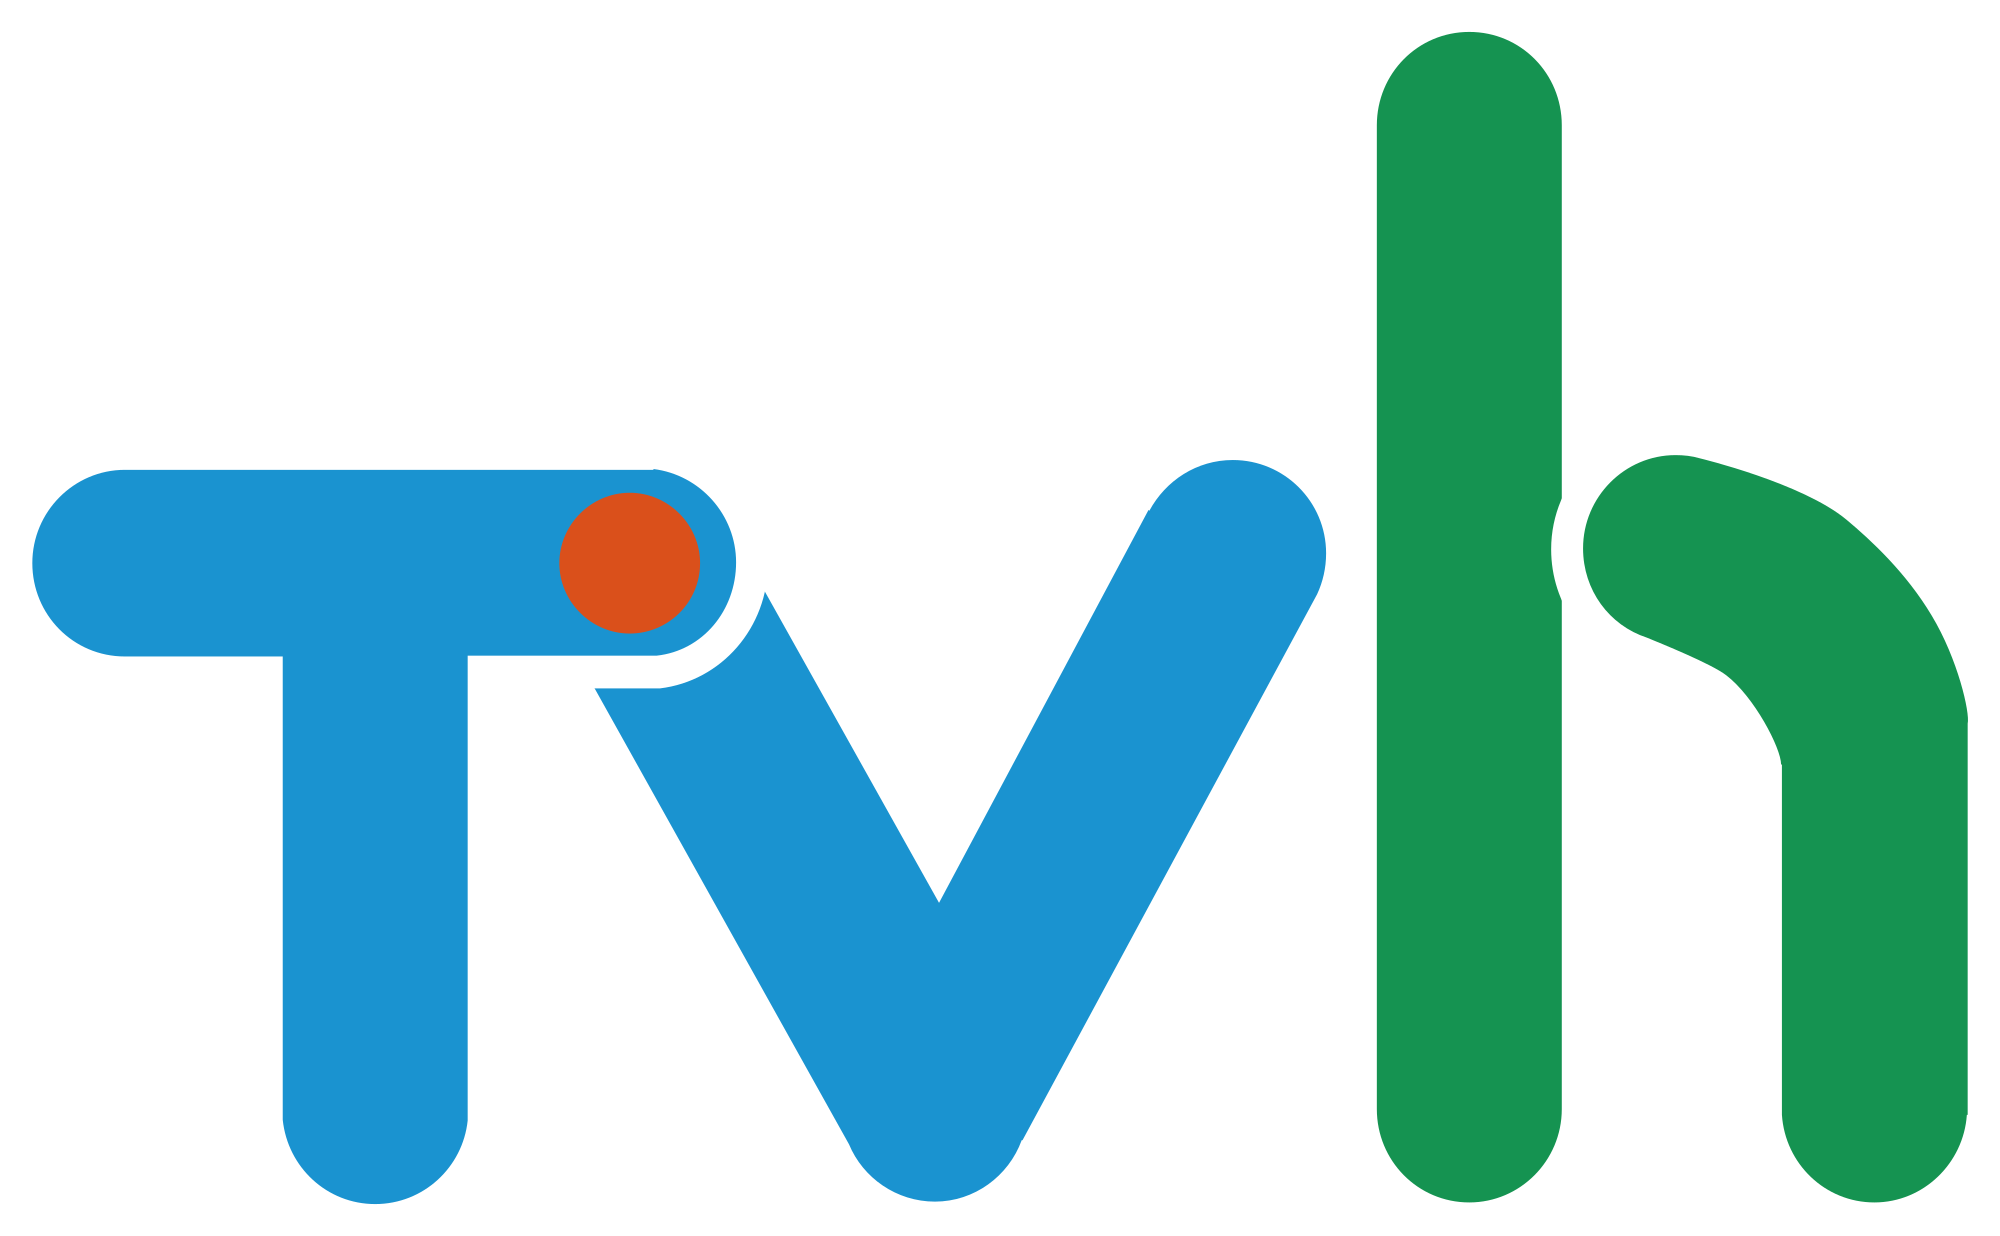 TVh - network